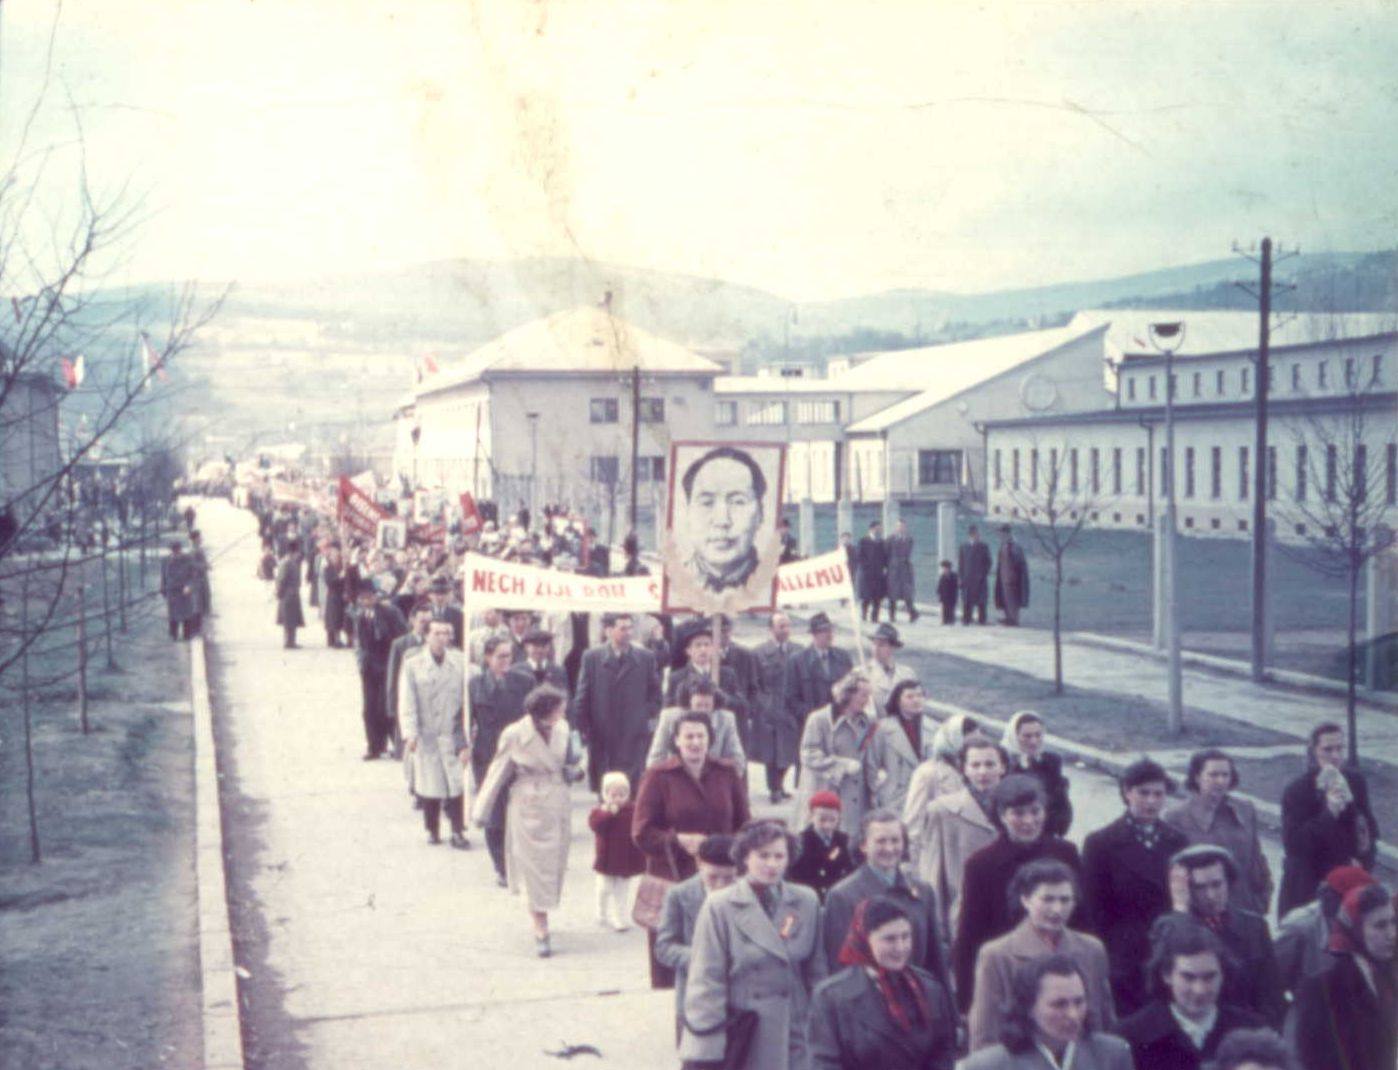 Aj takto vyzerali prvomájové sprievody mestom Púchov - konkrétne pri Makyte n. p. Zaujímavosťou je fakt, že ulica, na ktorej boli tieto fotografie v 50. rokoch zachytené, sa v súčasnosti volá 1. mája (vtedy Ulica Červenej armády)